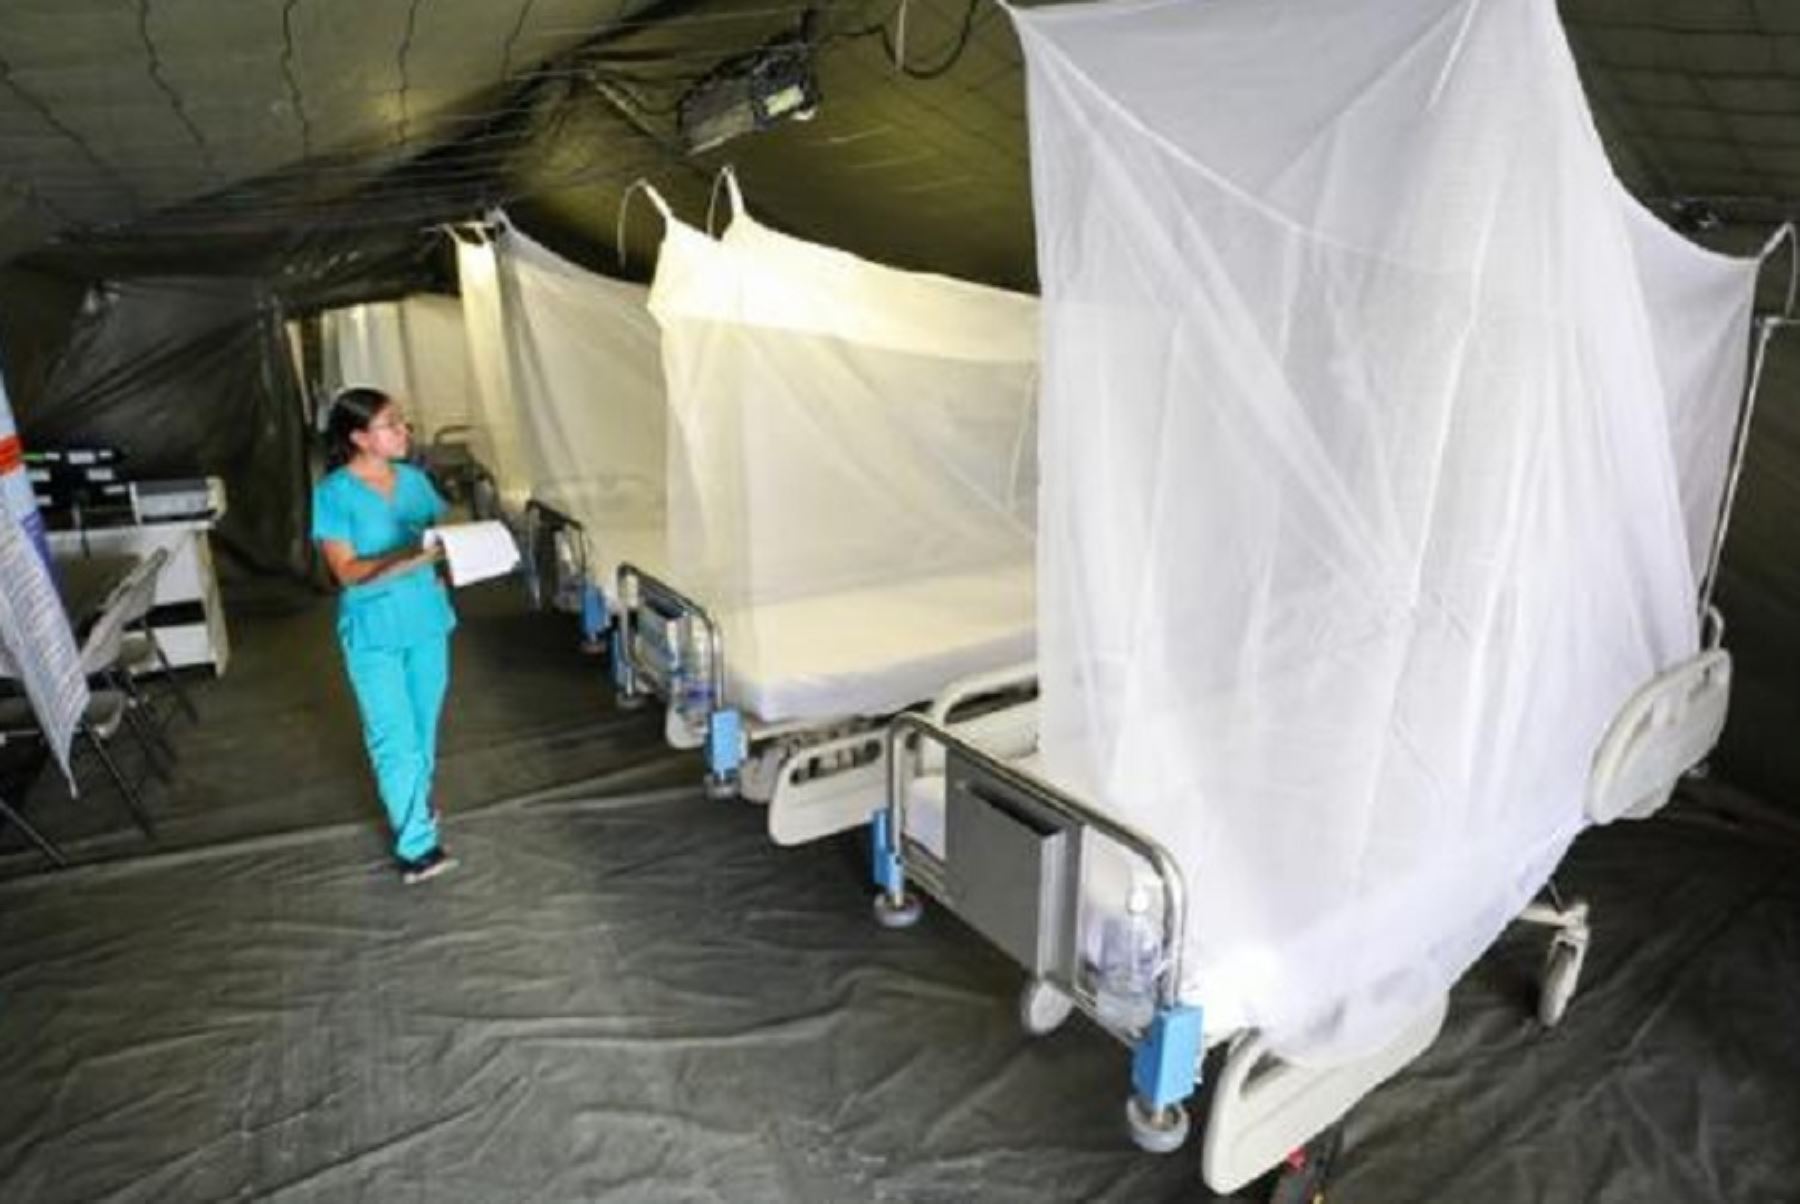 El Ministerio de Salud sostuvo que la atención que se brinda en los servicios de salud de Piura por el dengue no ha sido desbordada. El Hospital Santa Rosa, uno de los principales establecimientos que afronta esta emergencia, cuenta con camas disponibles en las carpas hospitalarias enviadas por el Minsa.